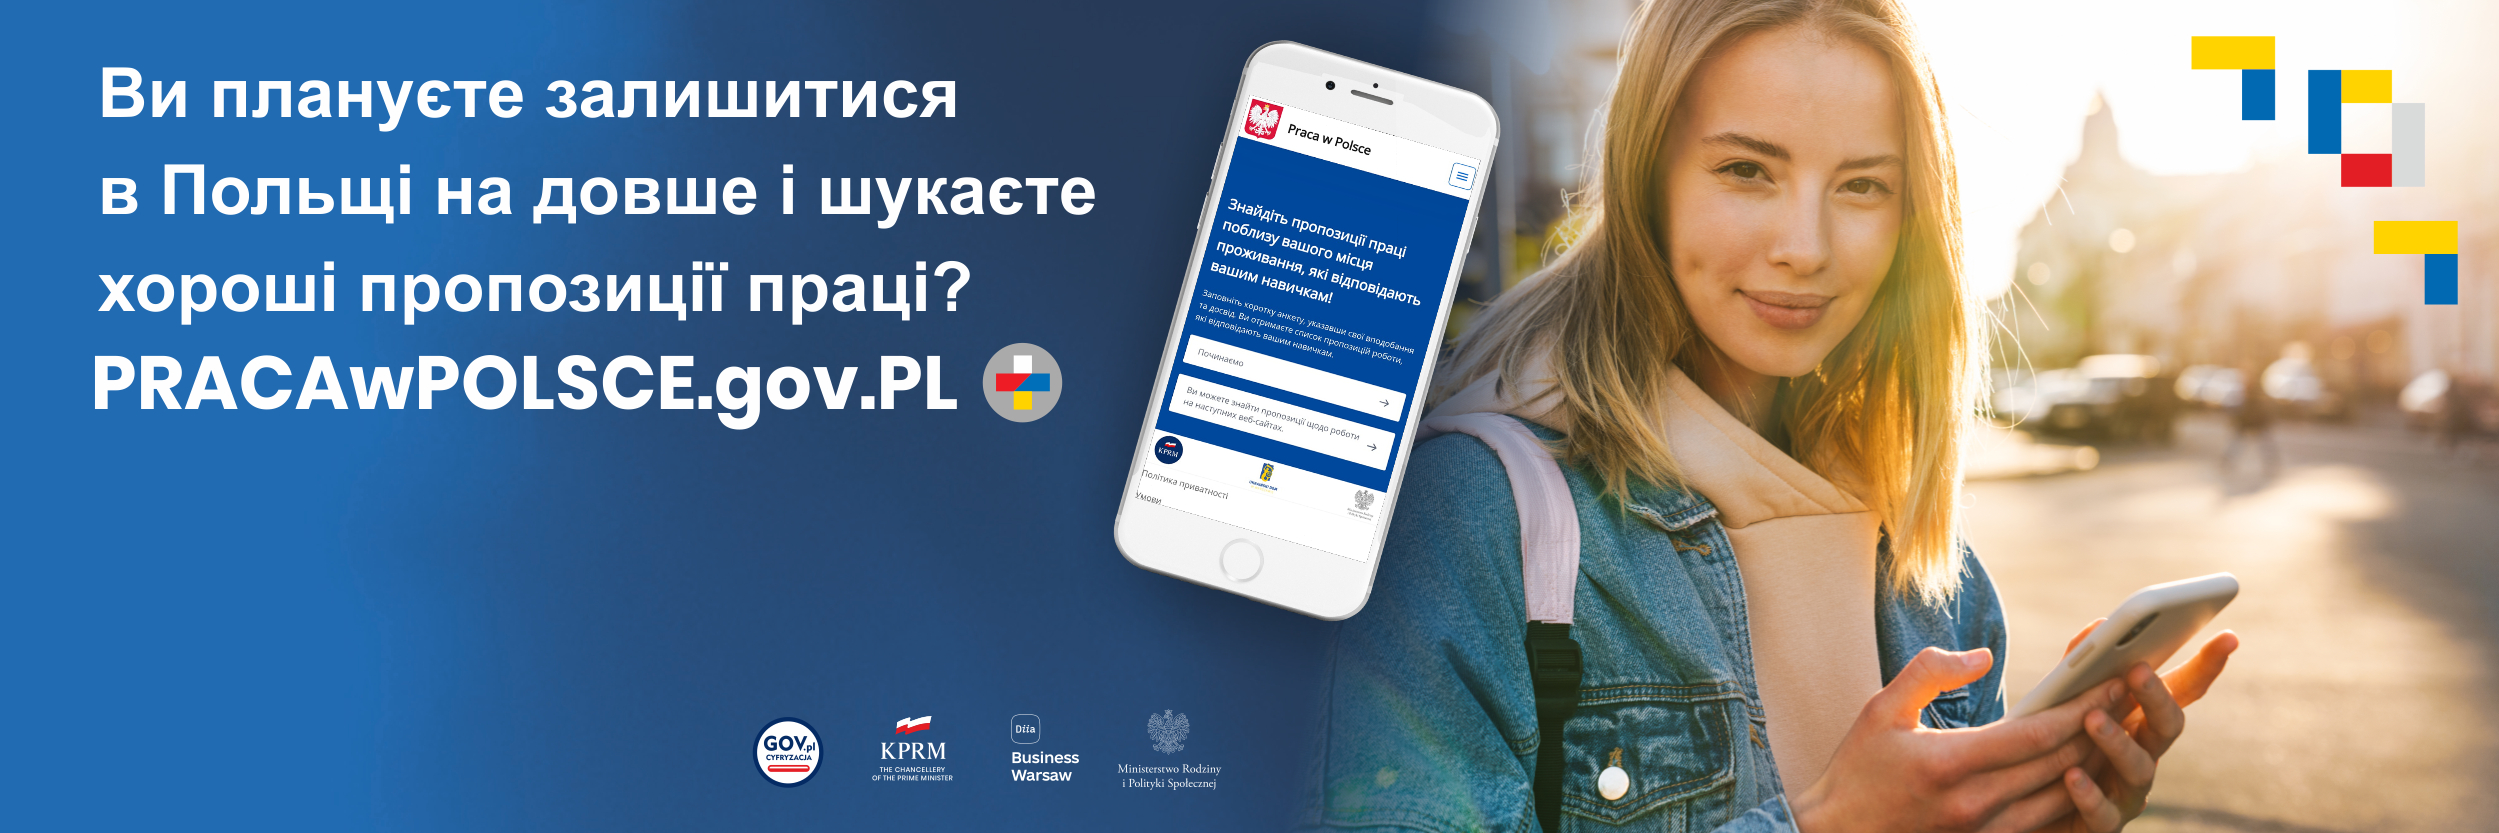 Grafika przedstawiająca młodą dziewczynę i telefon komórkowy z aplikacją pracawpolsce.gov.pl